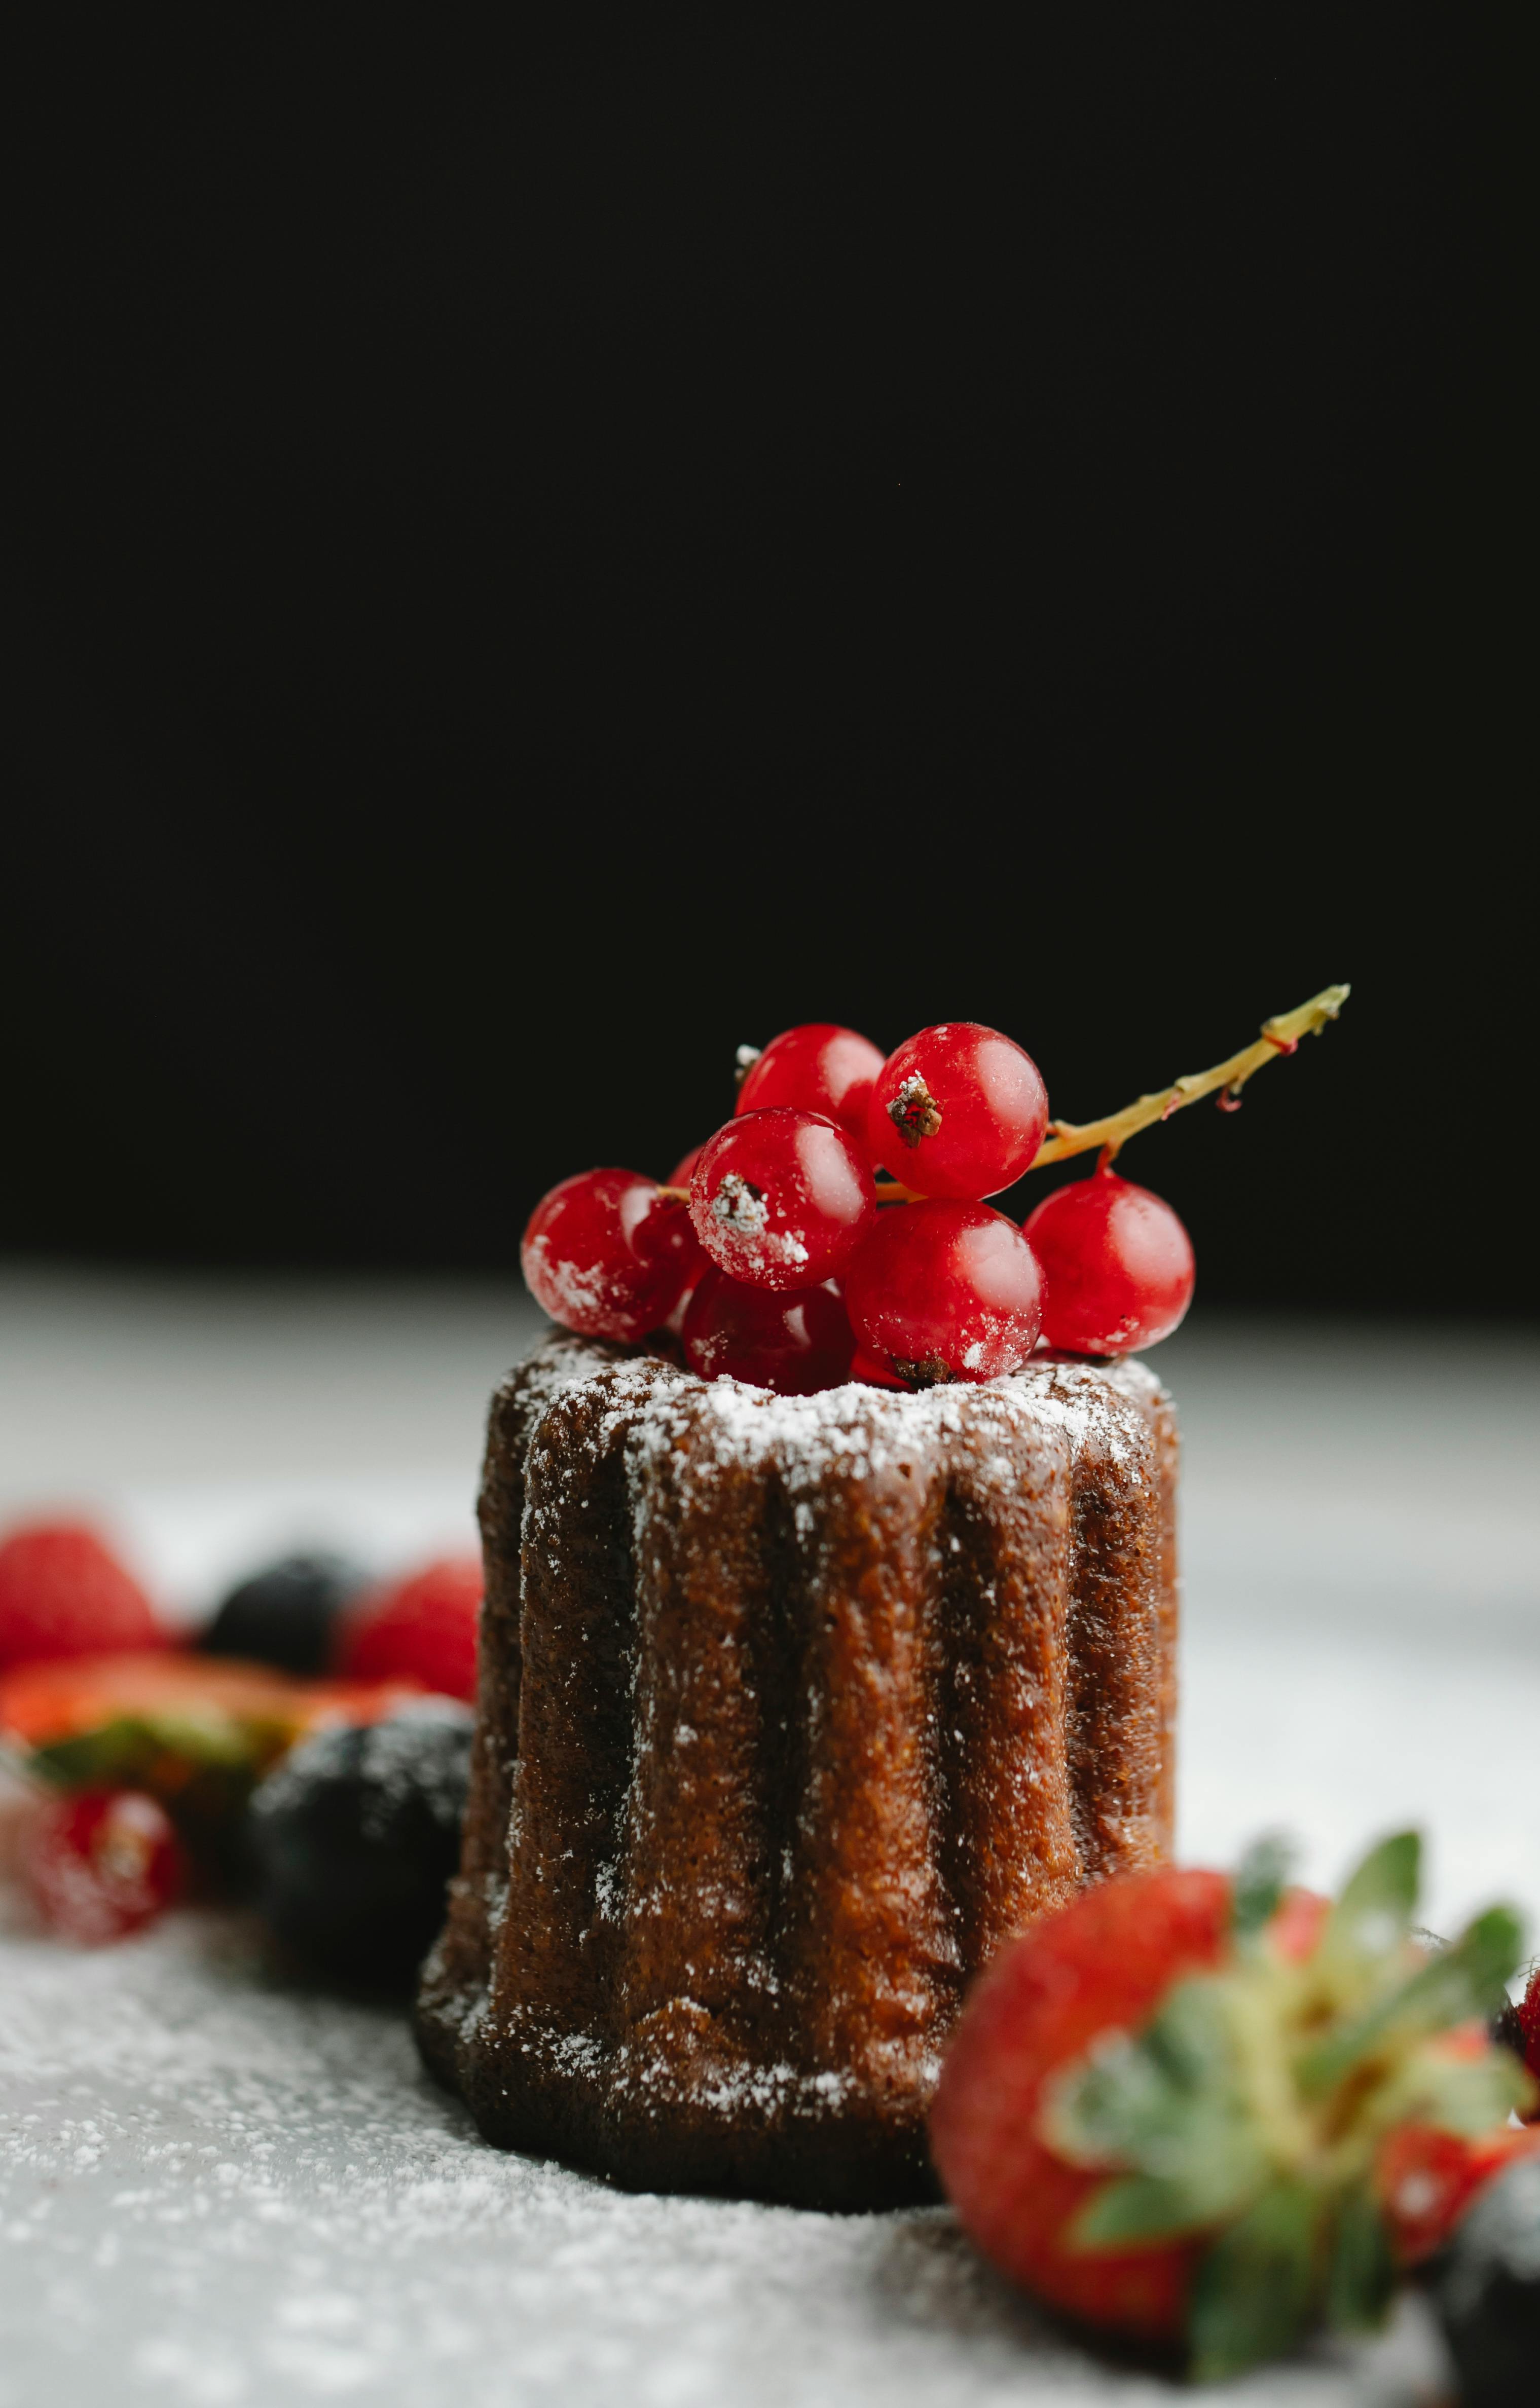 Tasty cake on black background · Free Stock Photo